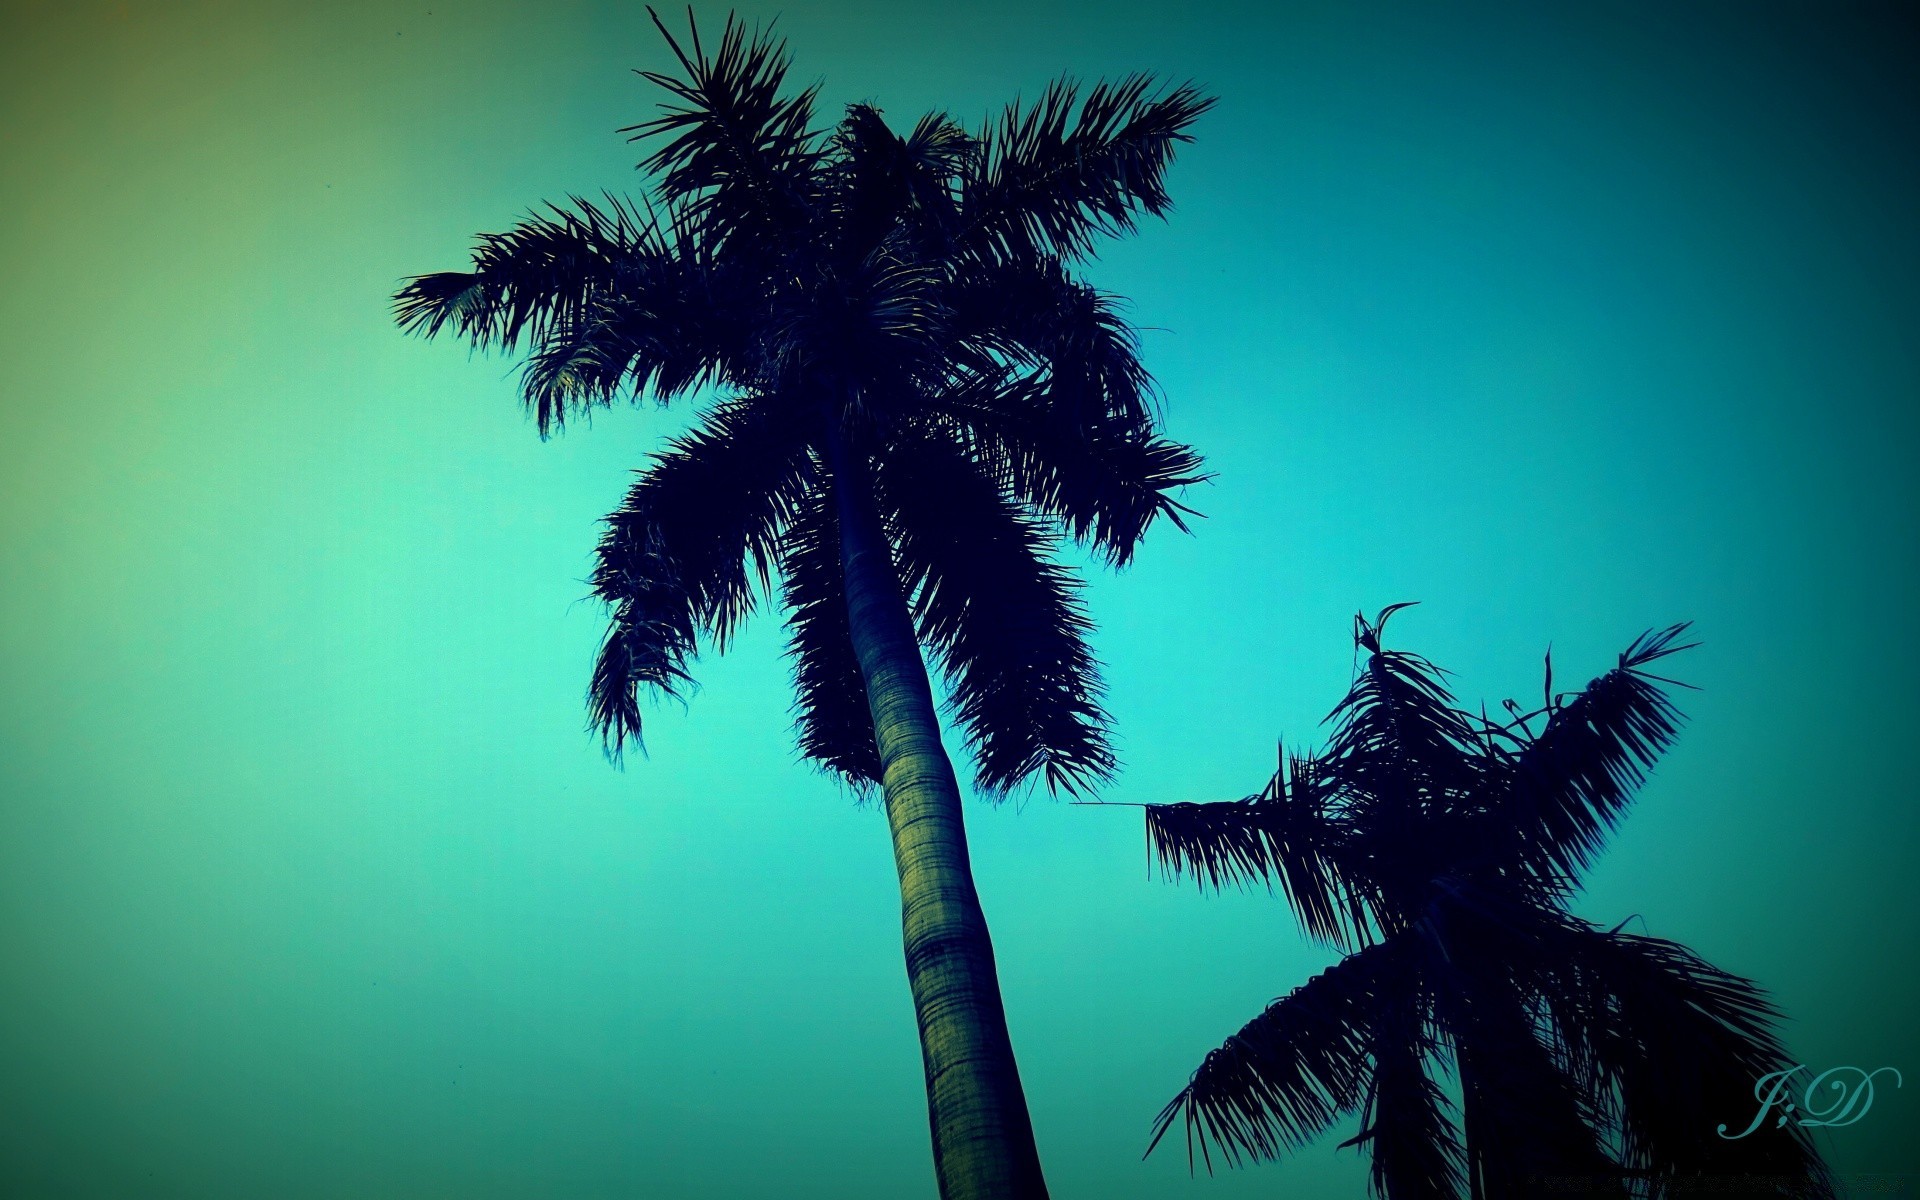 лето ладони пляж тропический кокосовое моря остров солнце экзотические океан идиллия песок дерево рай пейзаж отпуск